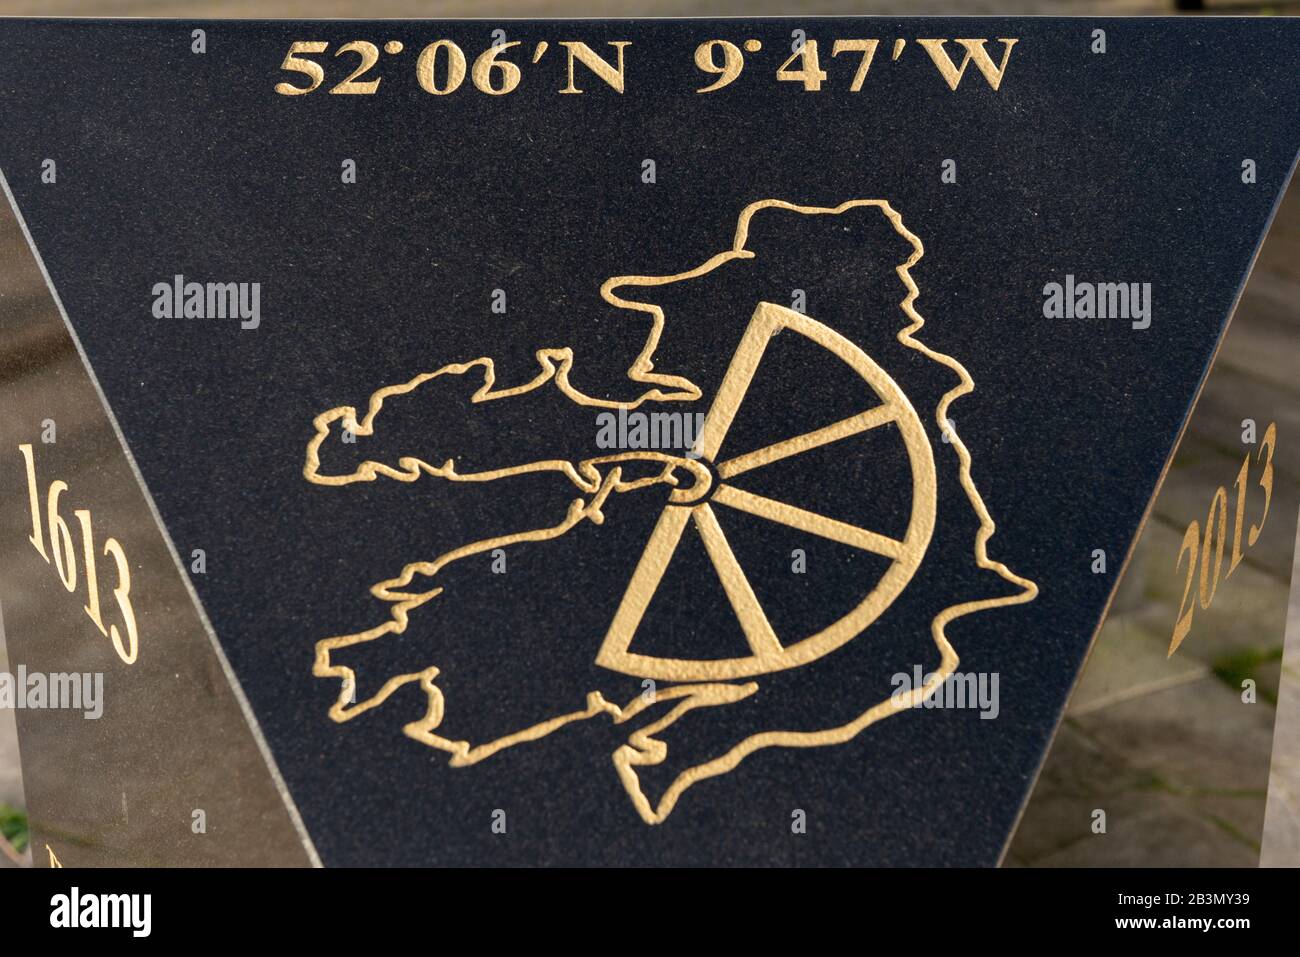 Meilensteindenkmal mit der Karte des County Kerry sowie breiten- und Längenkoordinaten für die genaue geographische Lage des Killorglin County Kerry Irela Stockfoto